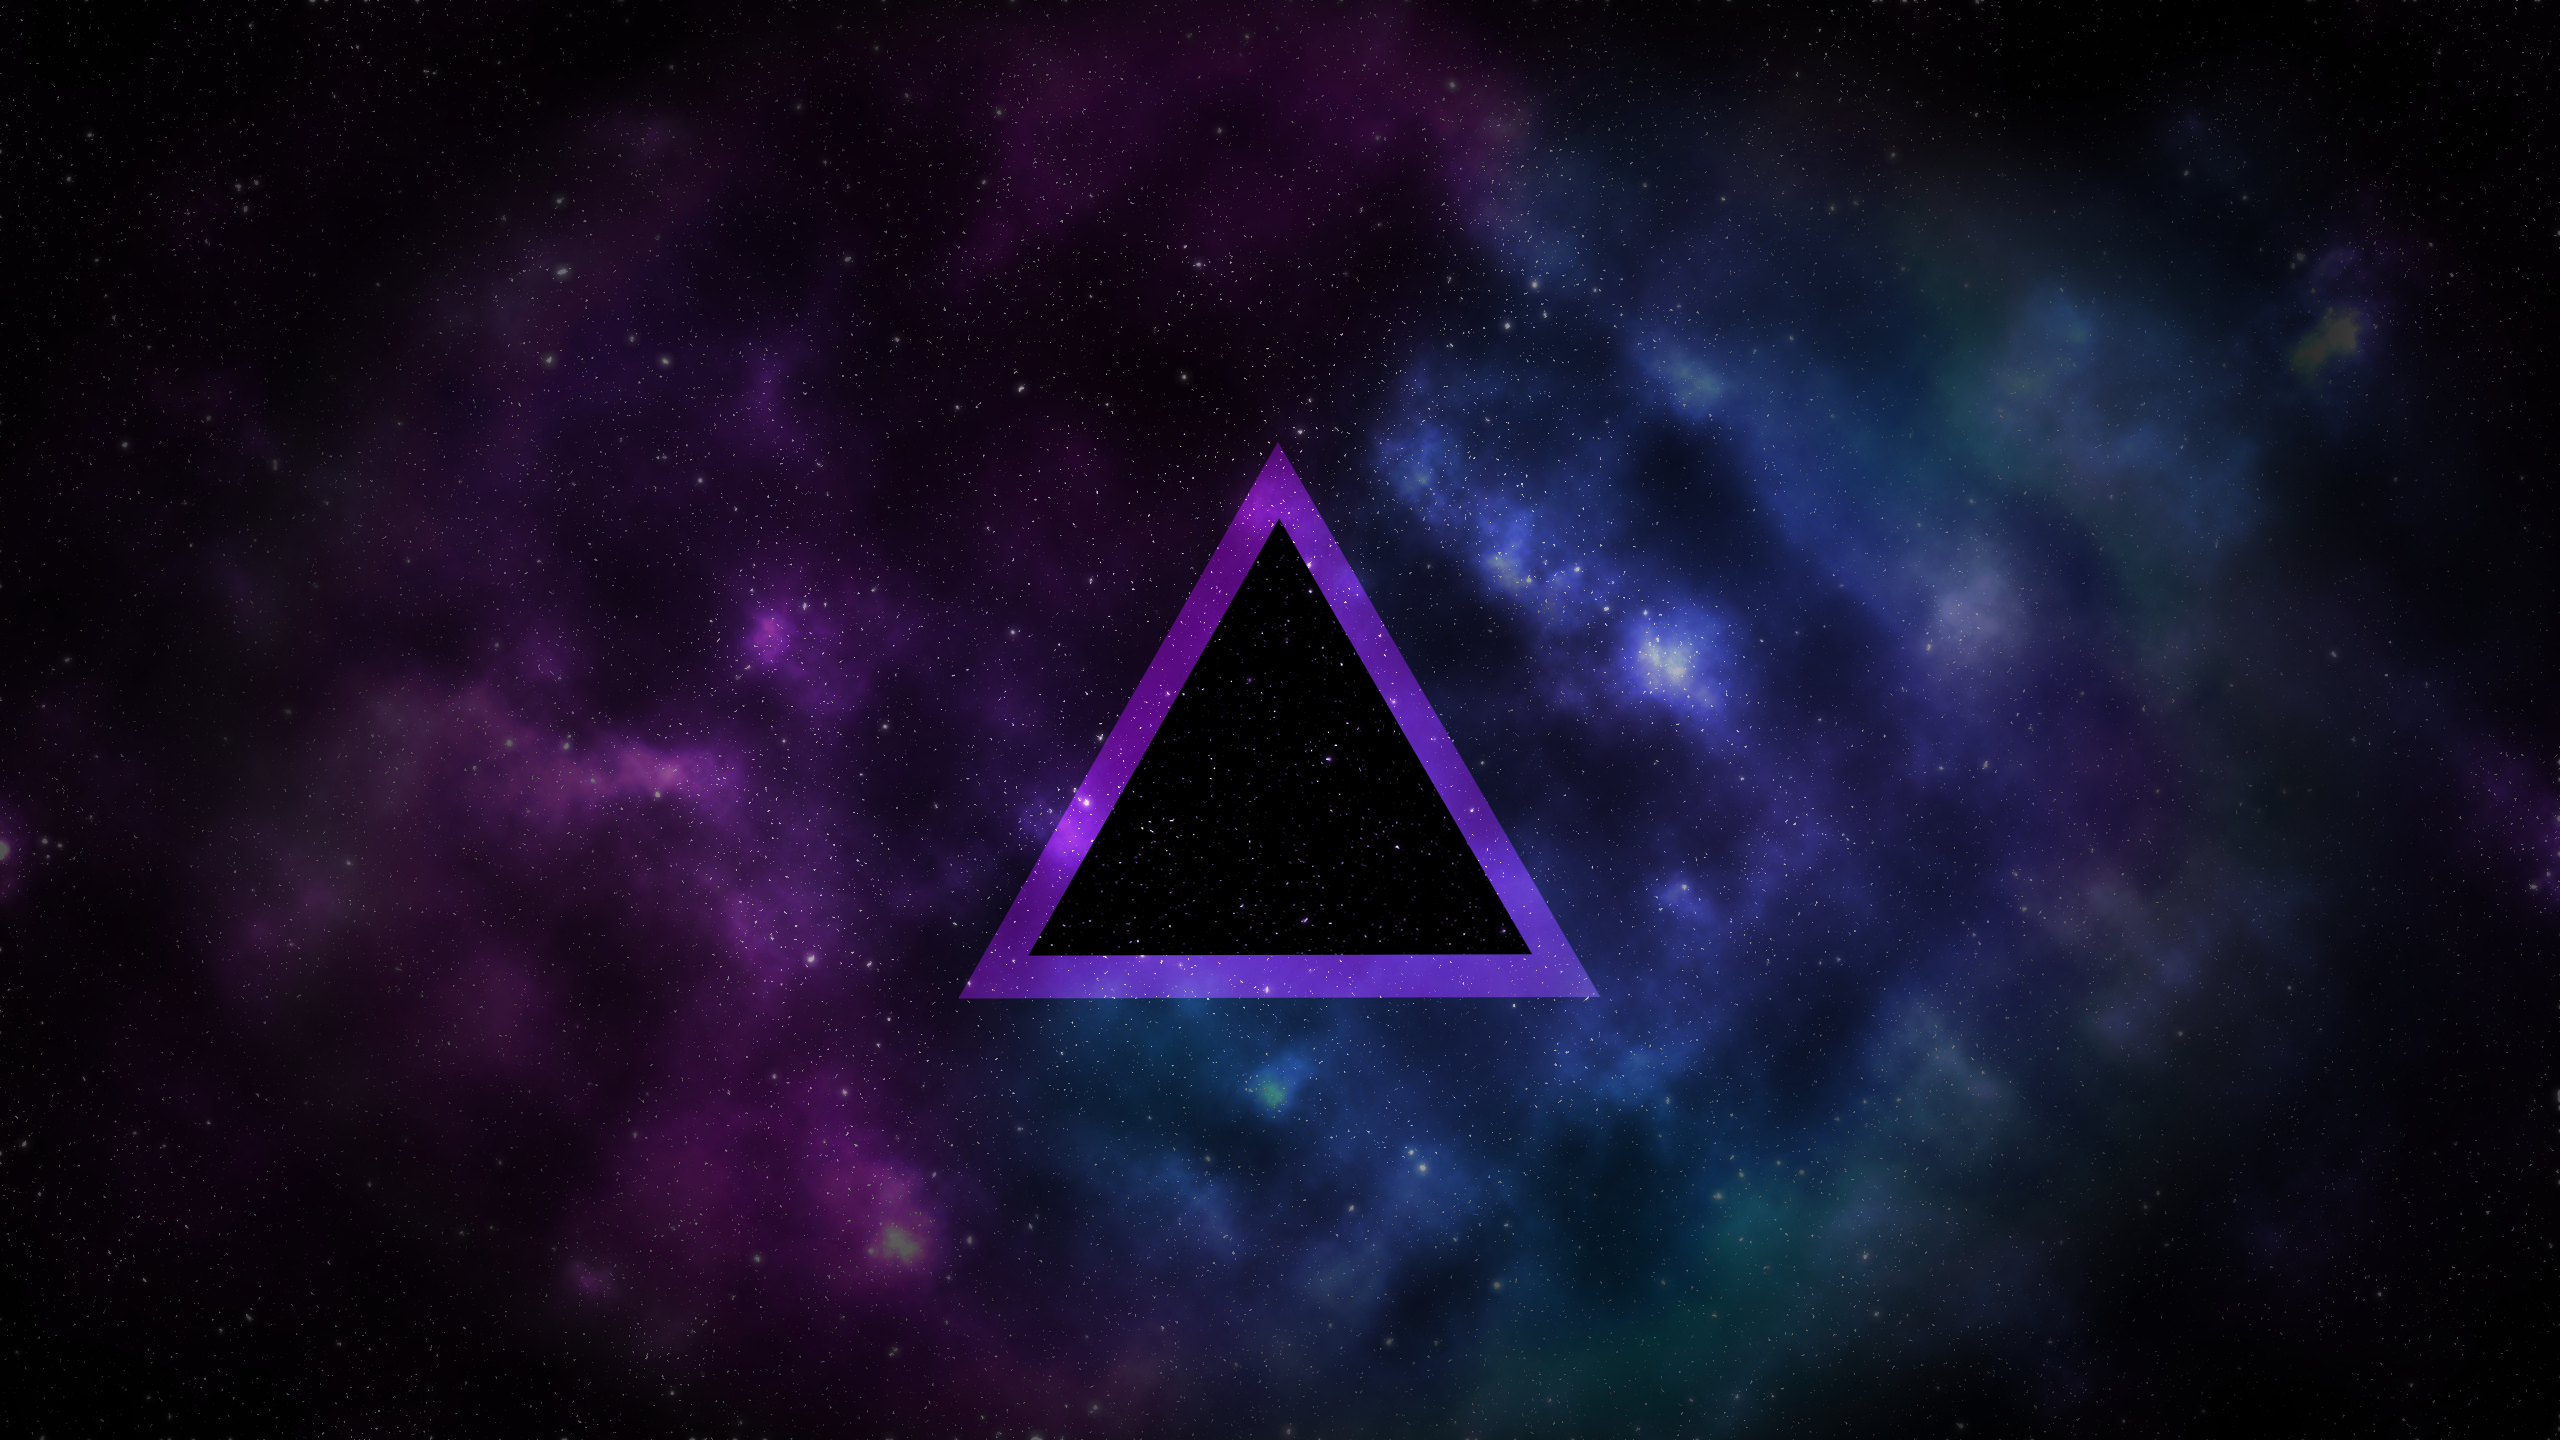 General 2560x1440 space stars triangle purple digital art